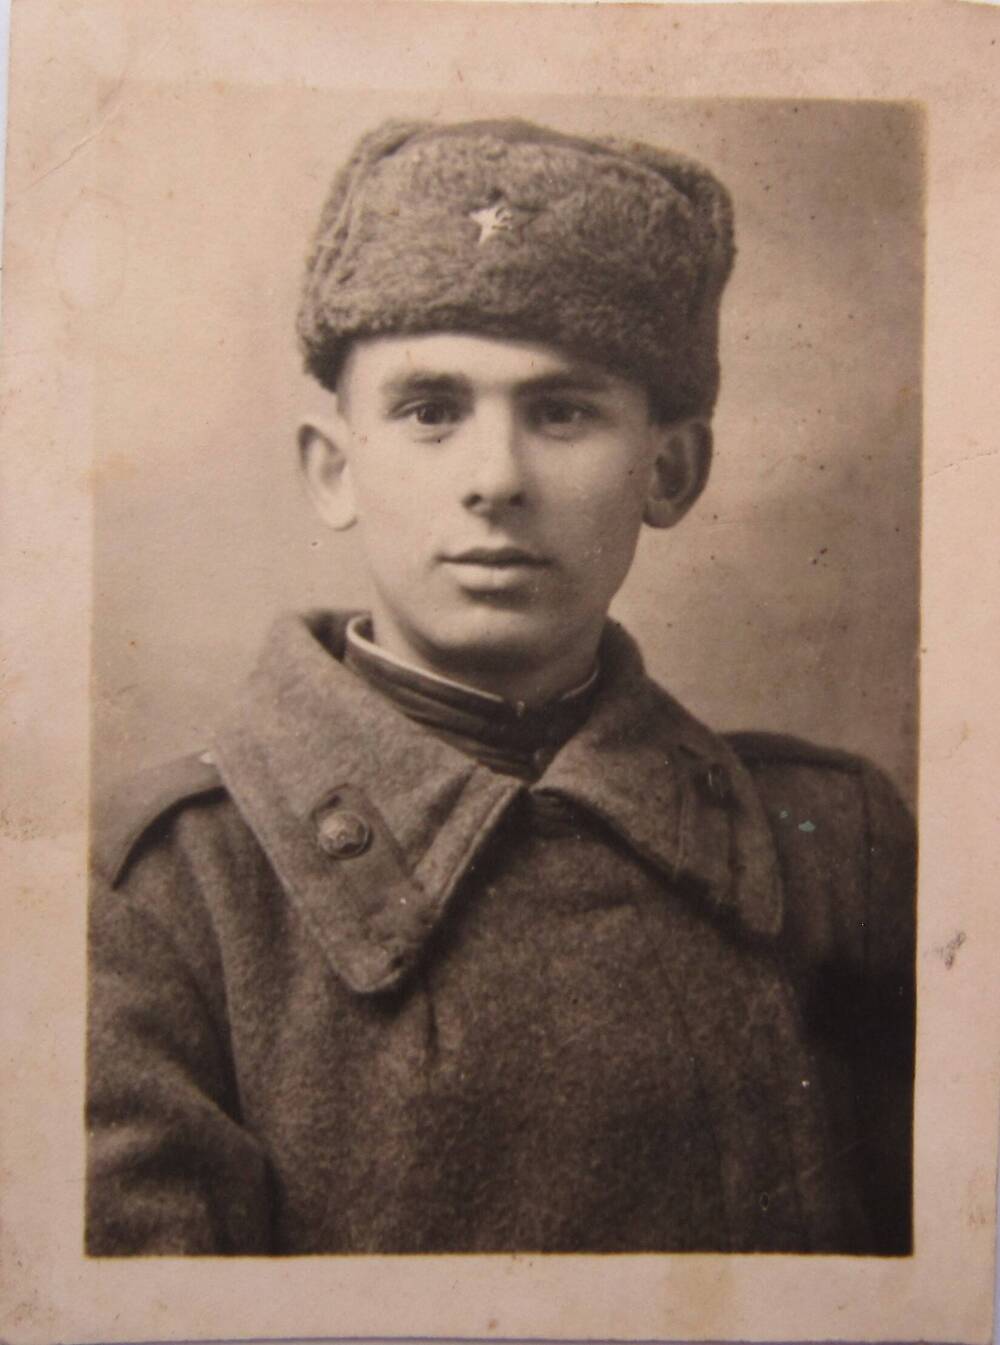 Фото. Поясной портрет Дробот В.Ф. – ветерана ВОВ.
1940-е гг.